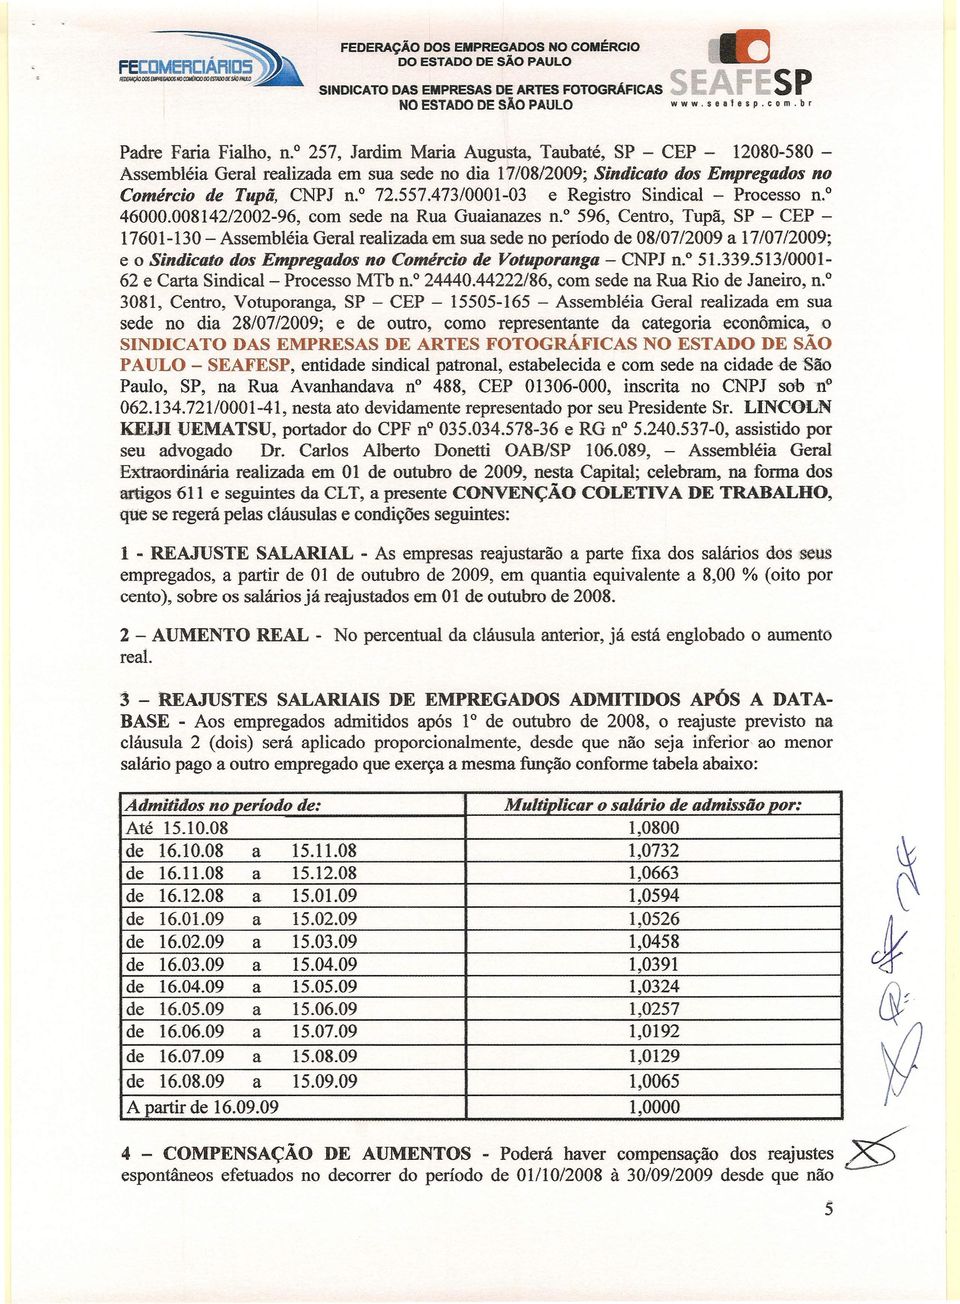 473/0001-03 e Registro Sindicl - Processo n." 46000.008142/2002-96, com sede n Ru Guinzes n.